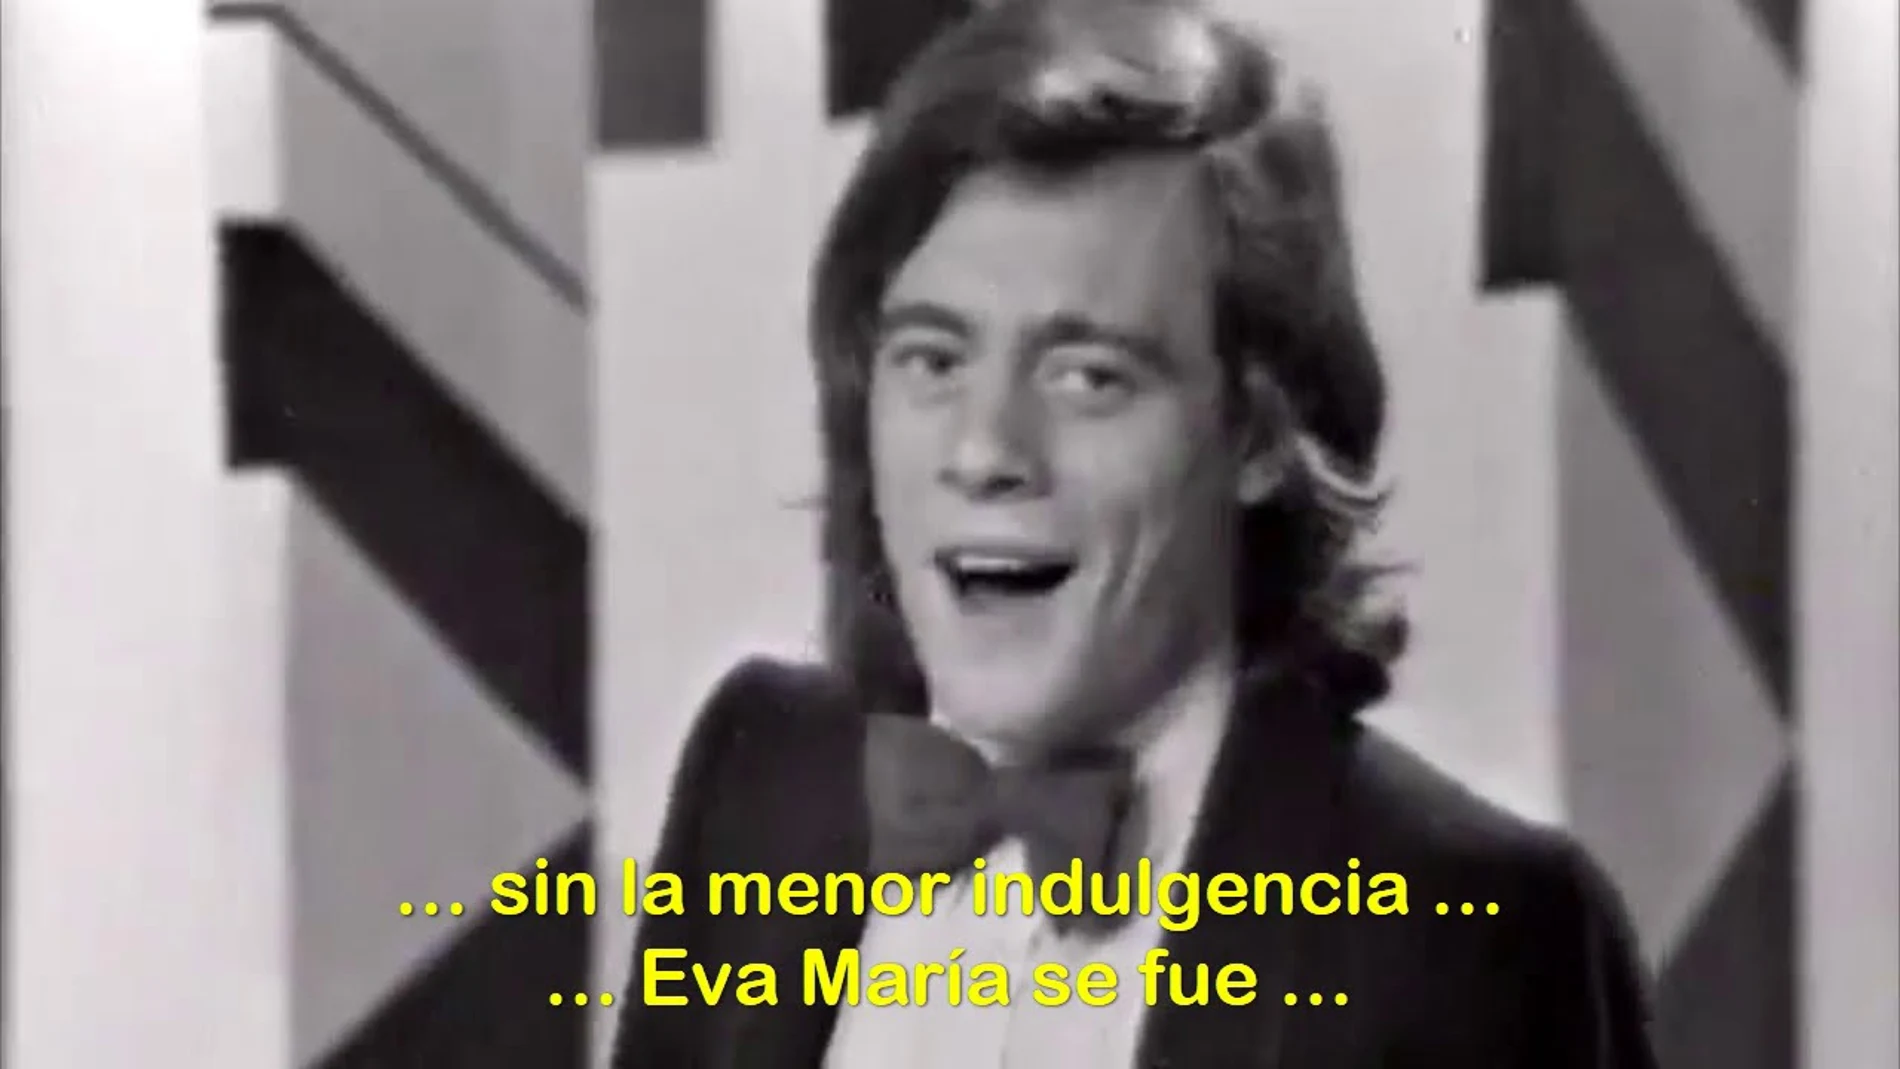 Vídeo de Fórmula V cantando la canción del verano "Eva María"